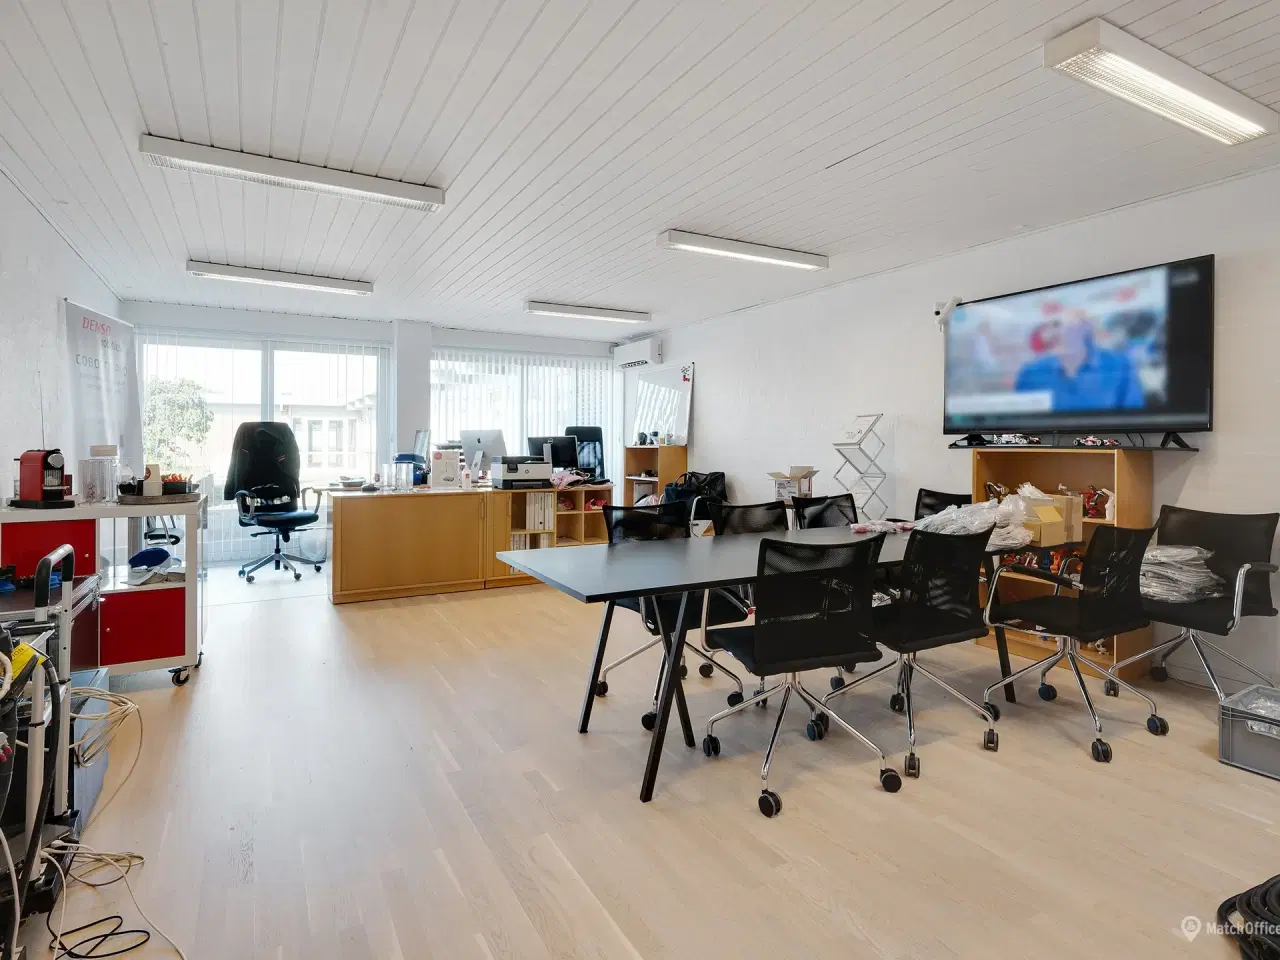 Billede 11 - Fleksible kontorlokaler i Erhvervscentret Silkeborg Syd - 10 min. kørsel til Silkeborg C og 25 min. til E45 Horsens S, Aarhus S og V samt Skanderborg.